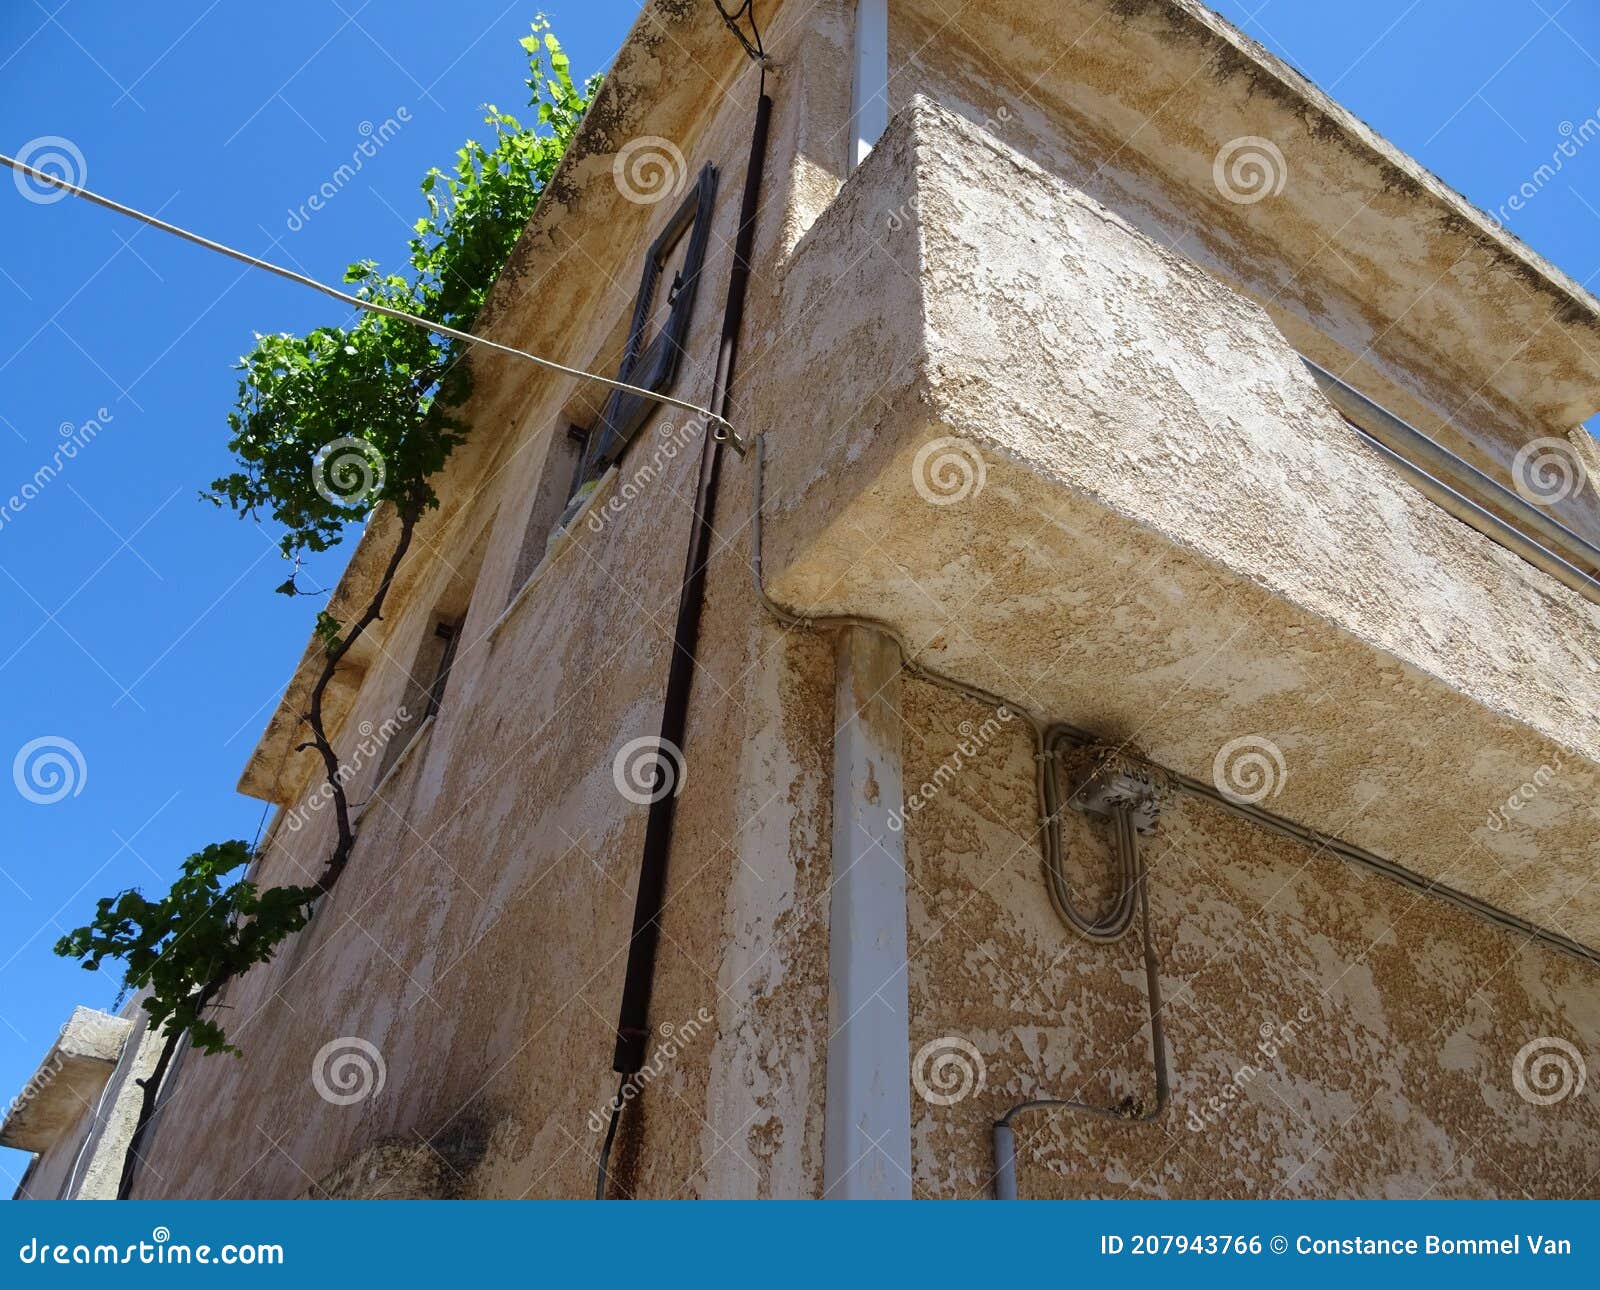 greek street vieuw building kreta chersonissos